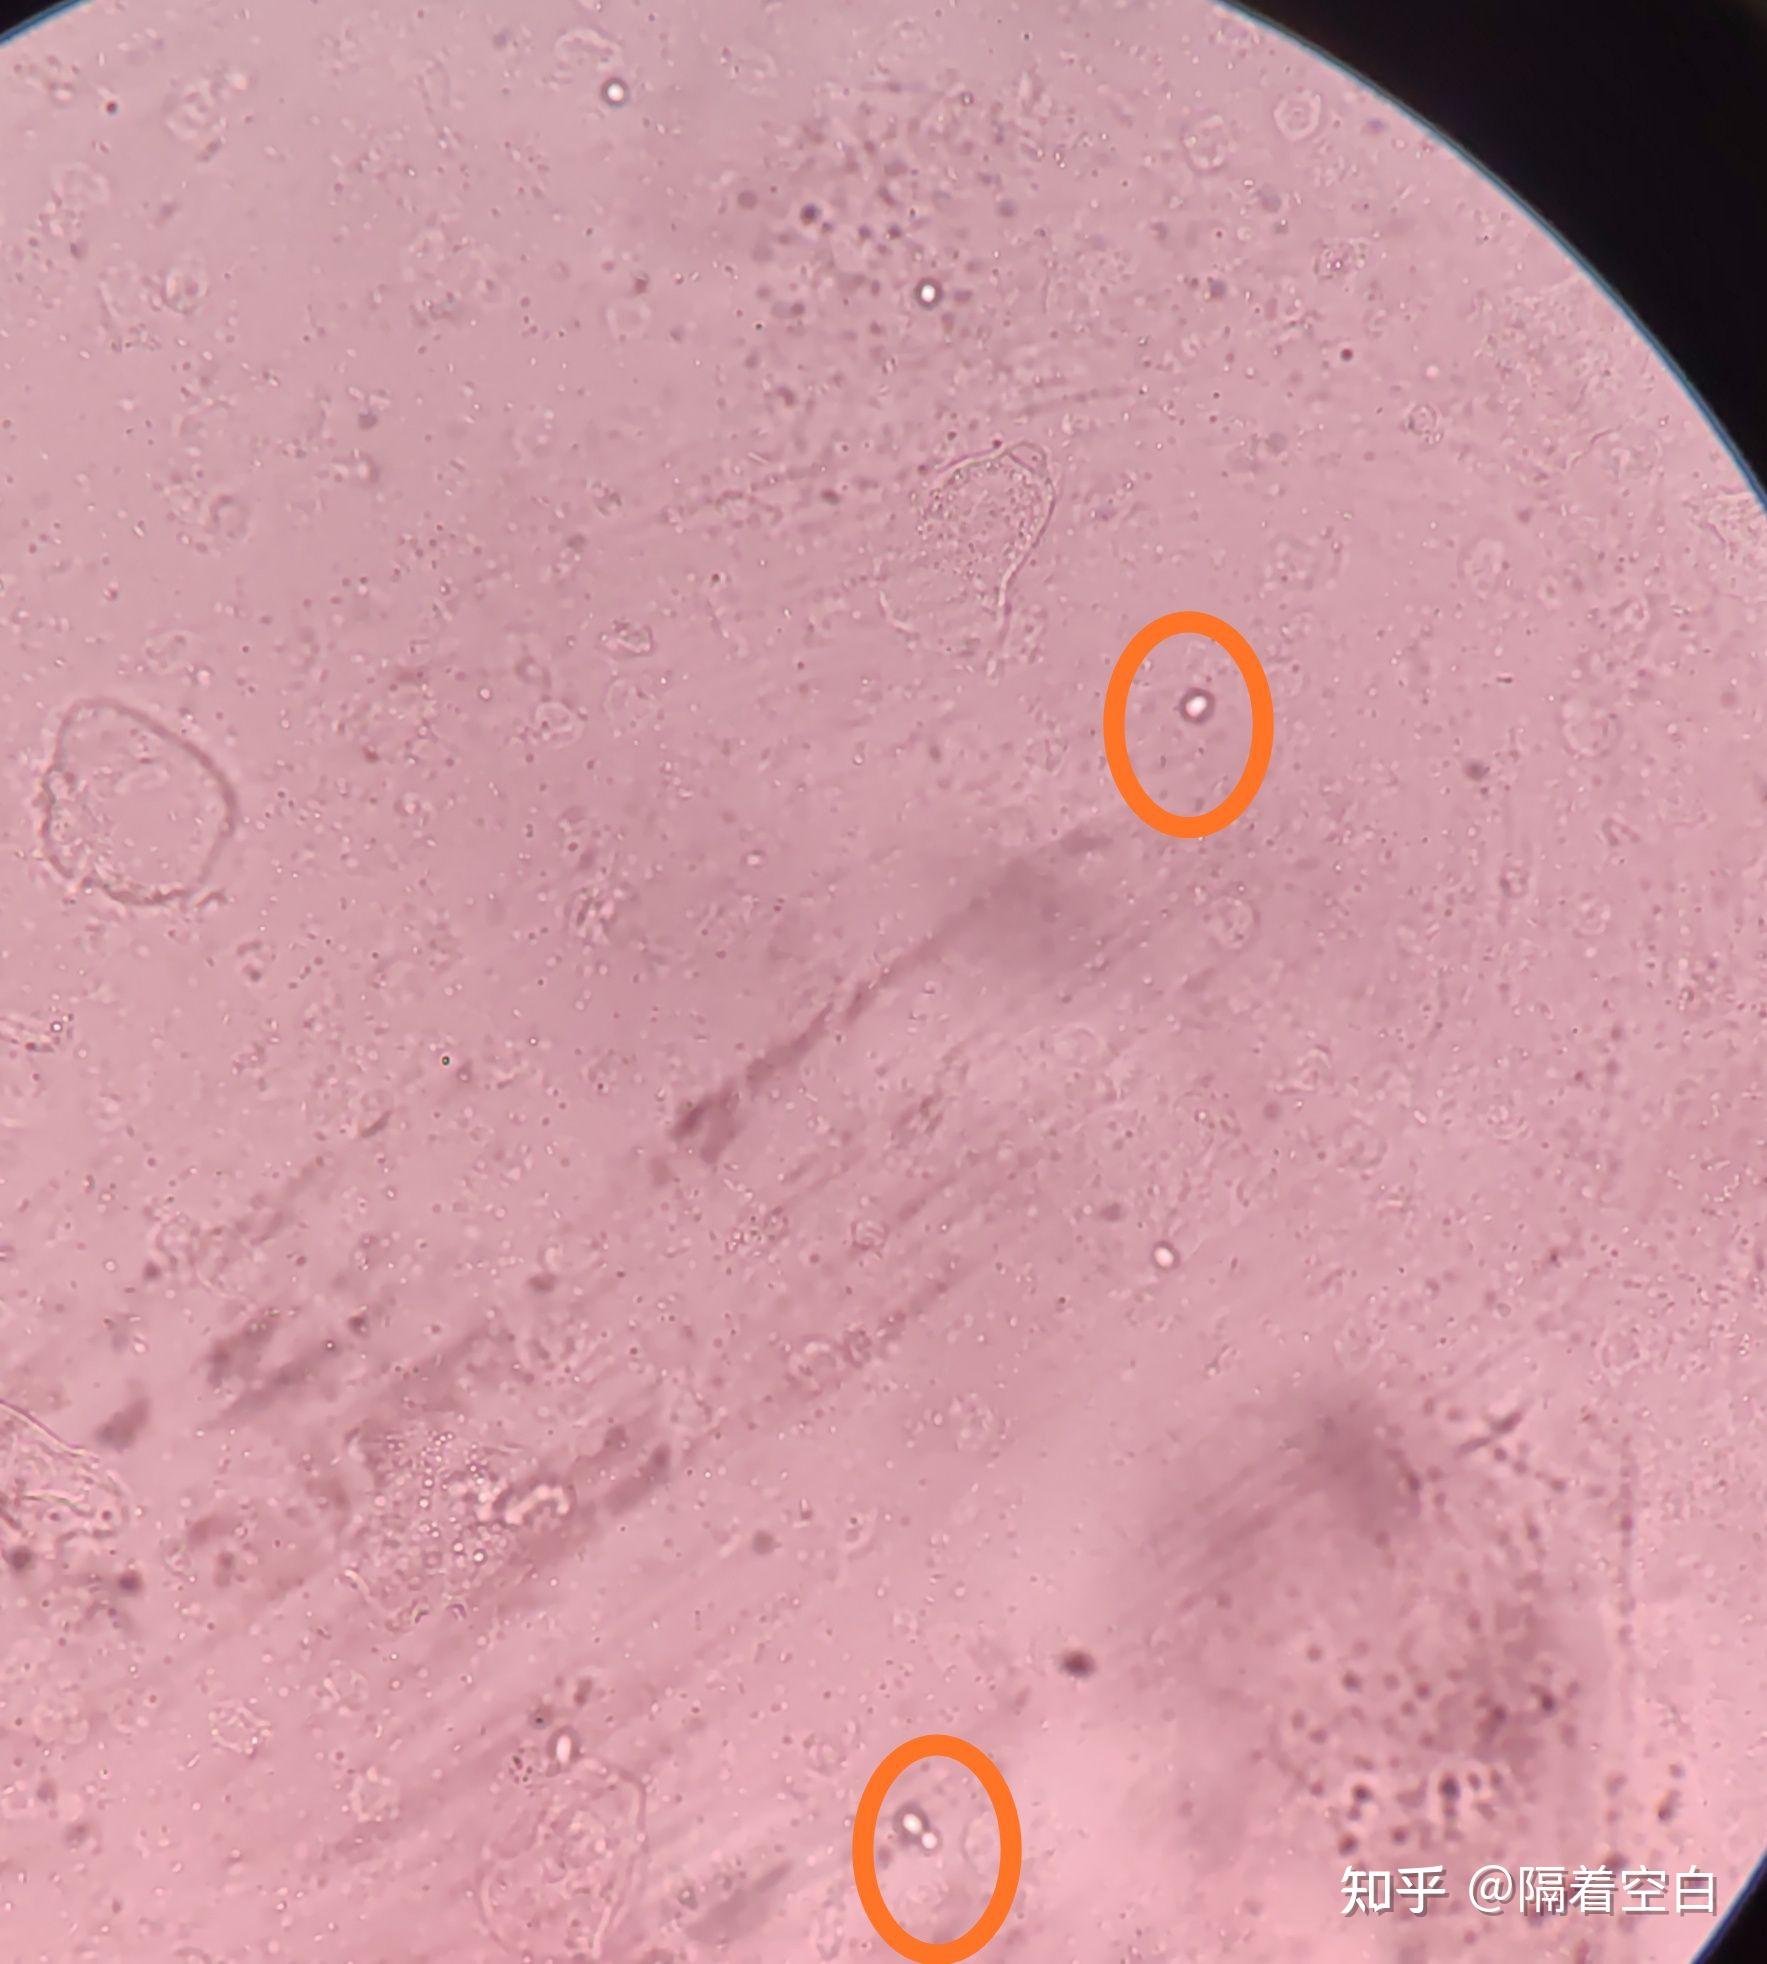 40×镜下念珠菌(少量)图五:40×镜下大量念珠菌酵母样霉菌多数有菌丝